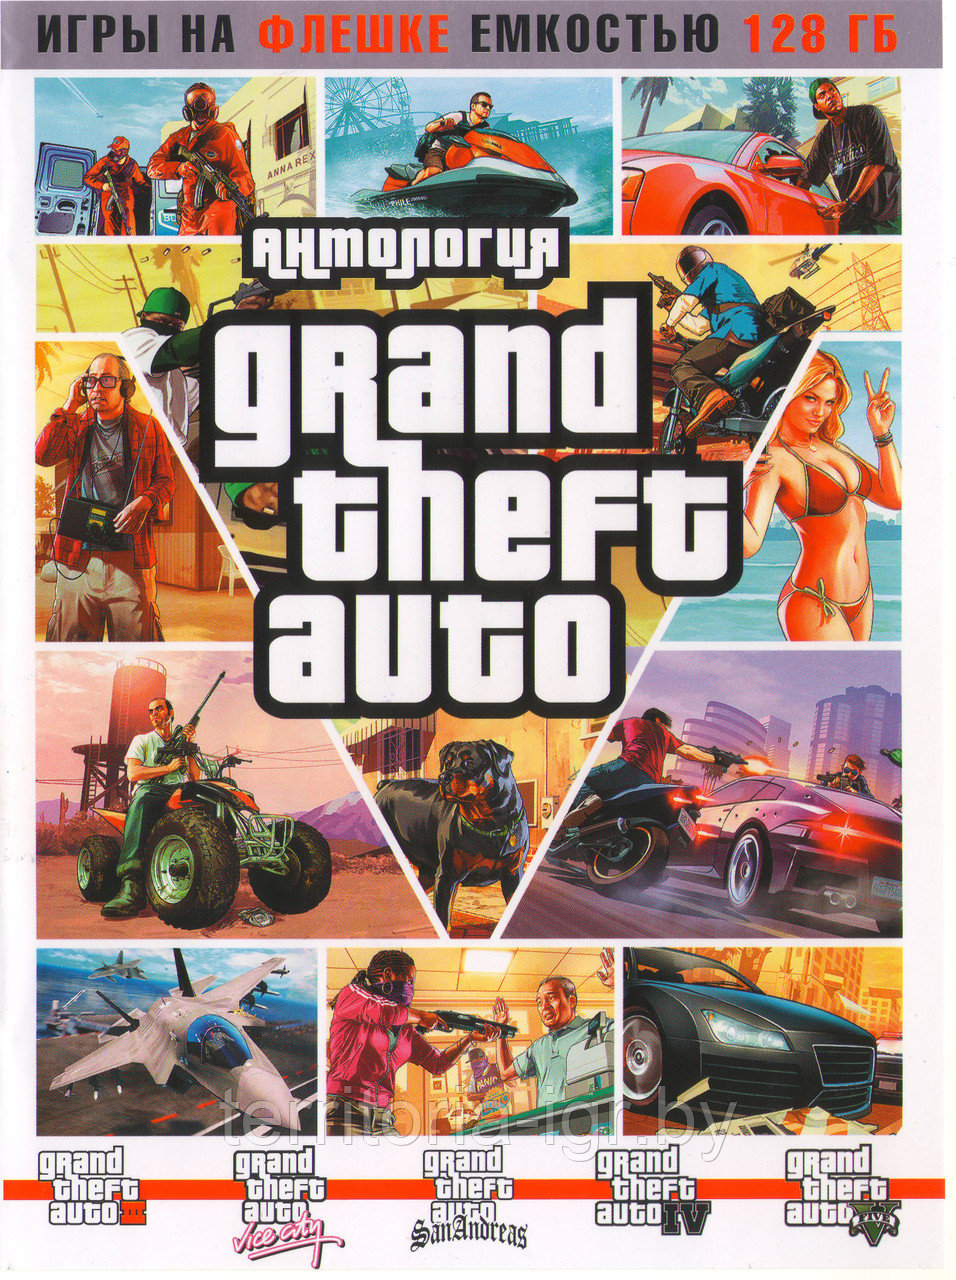 Антология Grand Theft Auto PC (Копия лицензии) Игры на флешке емкостью 128 Гб